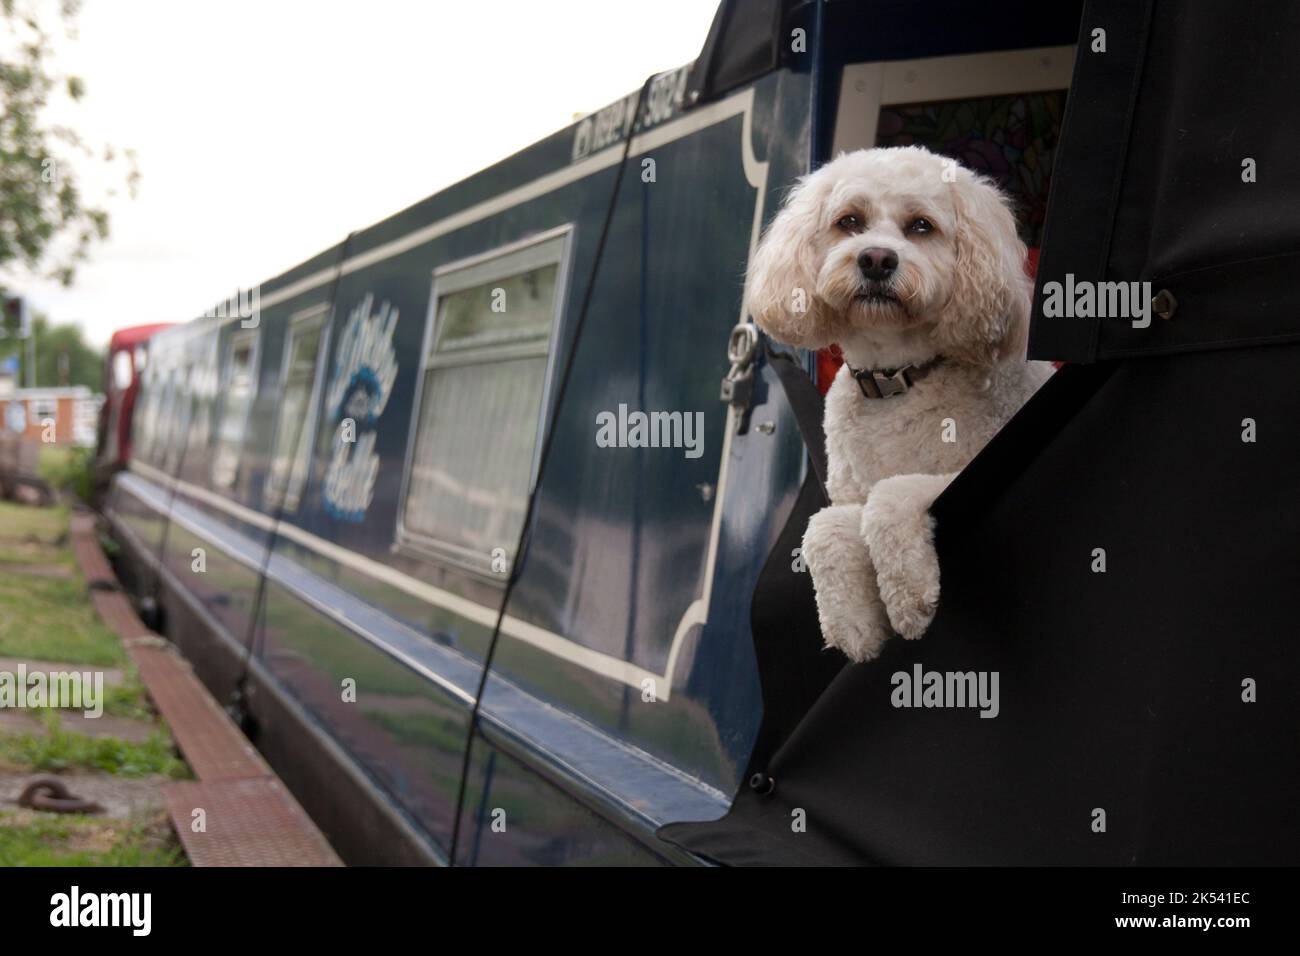 Cane sulla barca dei canali, Regno Unito Foto Stock